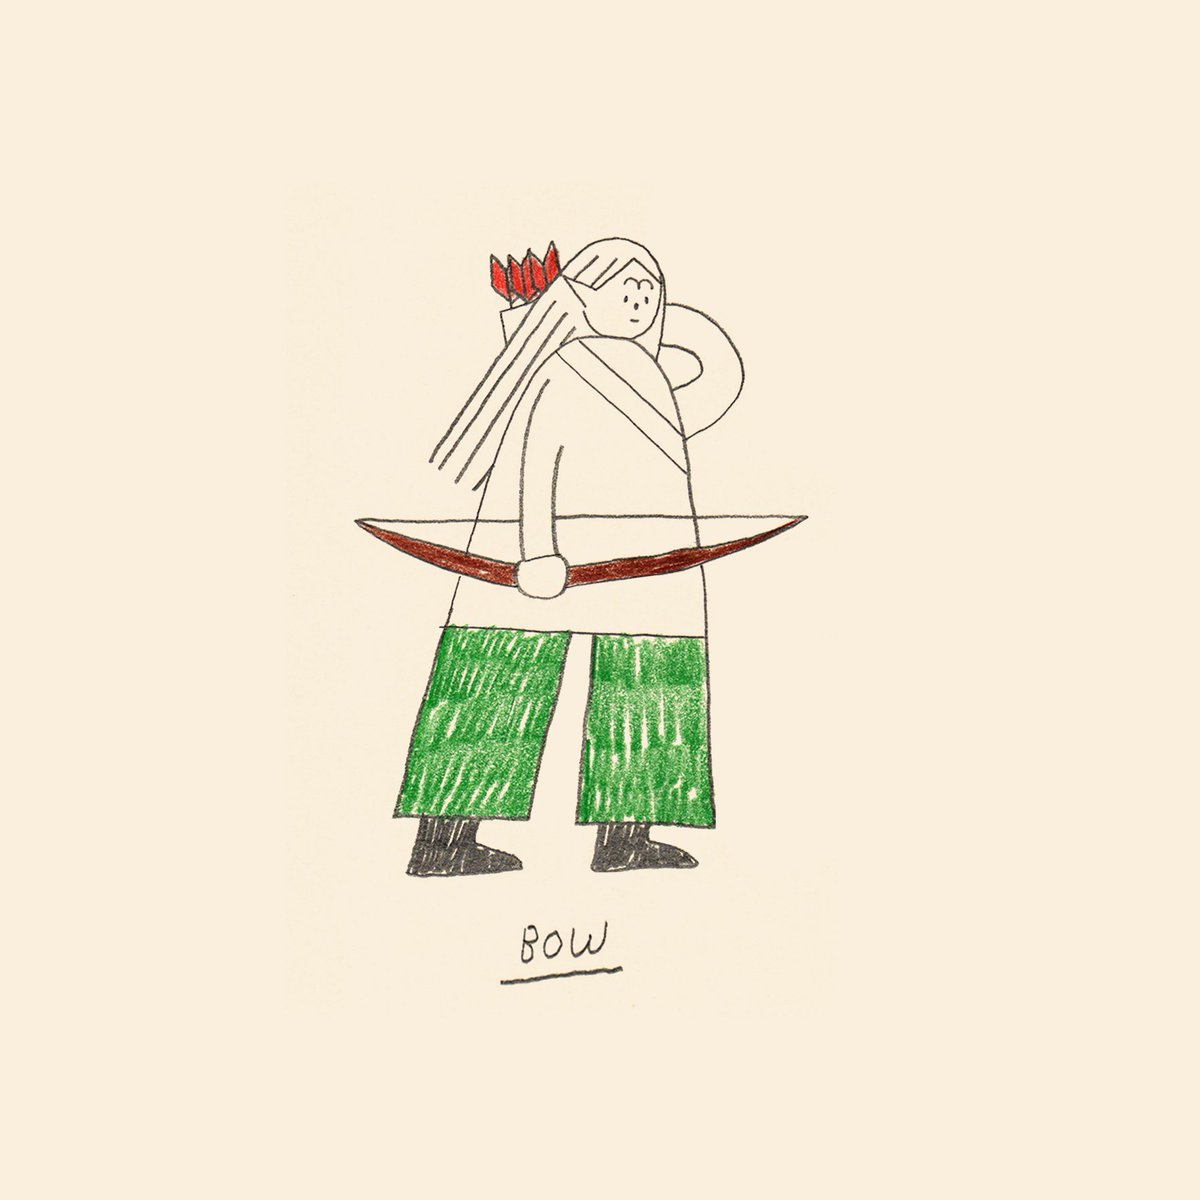 「oct 5: bow 」|sareeのイラスト